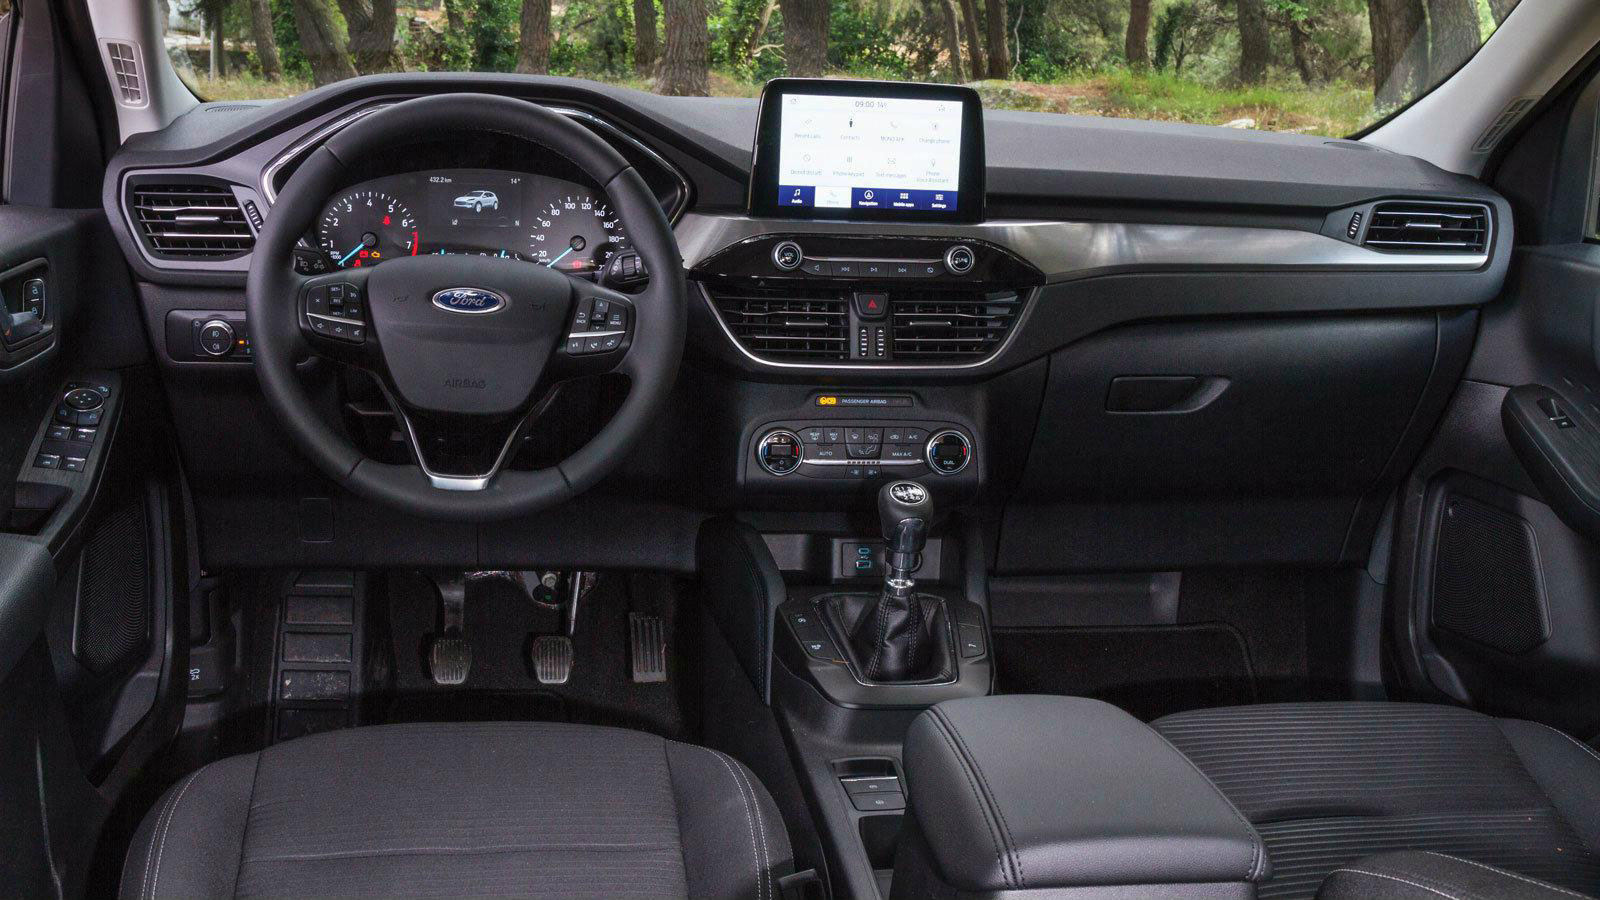 Τα υλικά στο ταμπλό του Ford Kuga είναι μαλακά και ποιοτικά, και έχουν premium αίσθηση